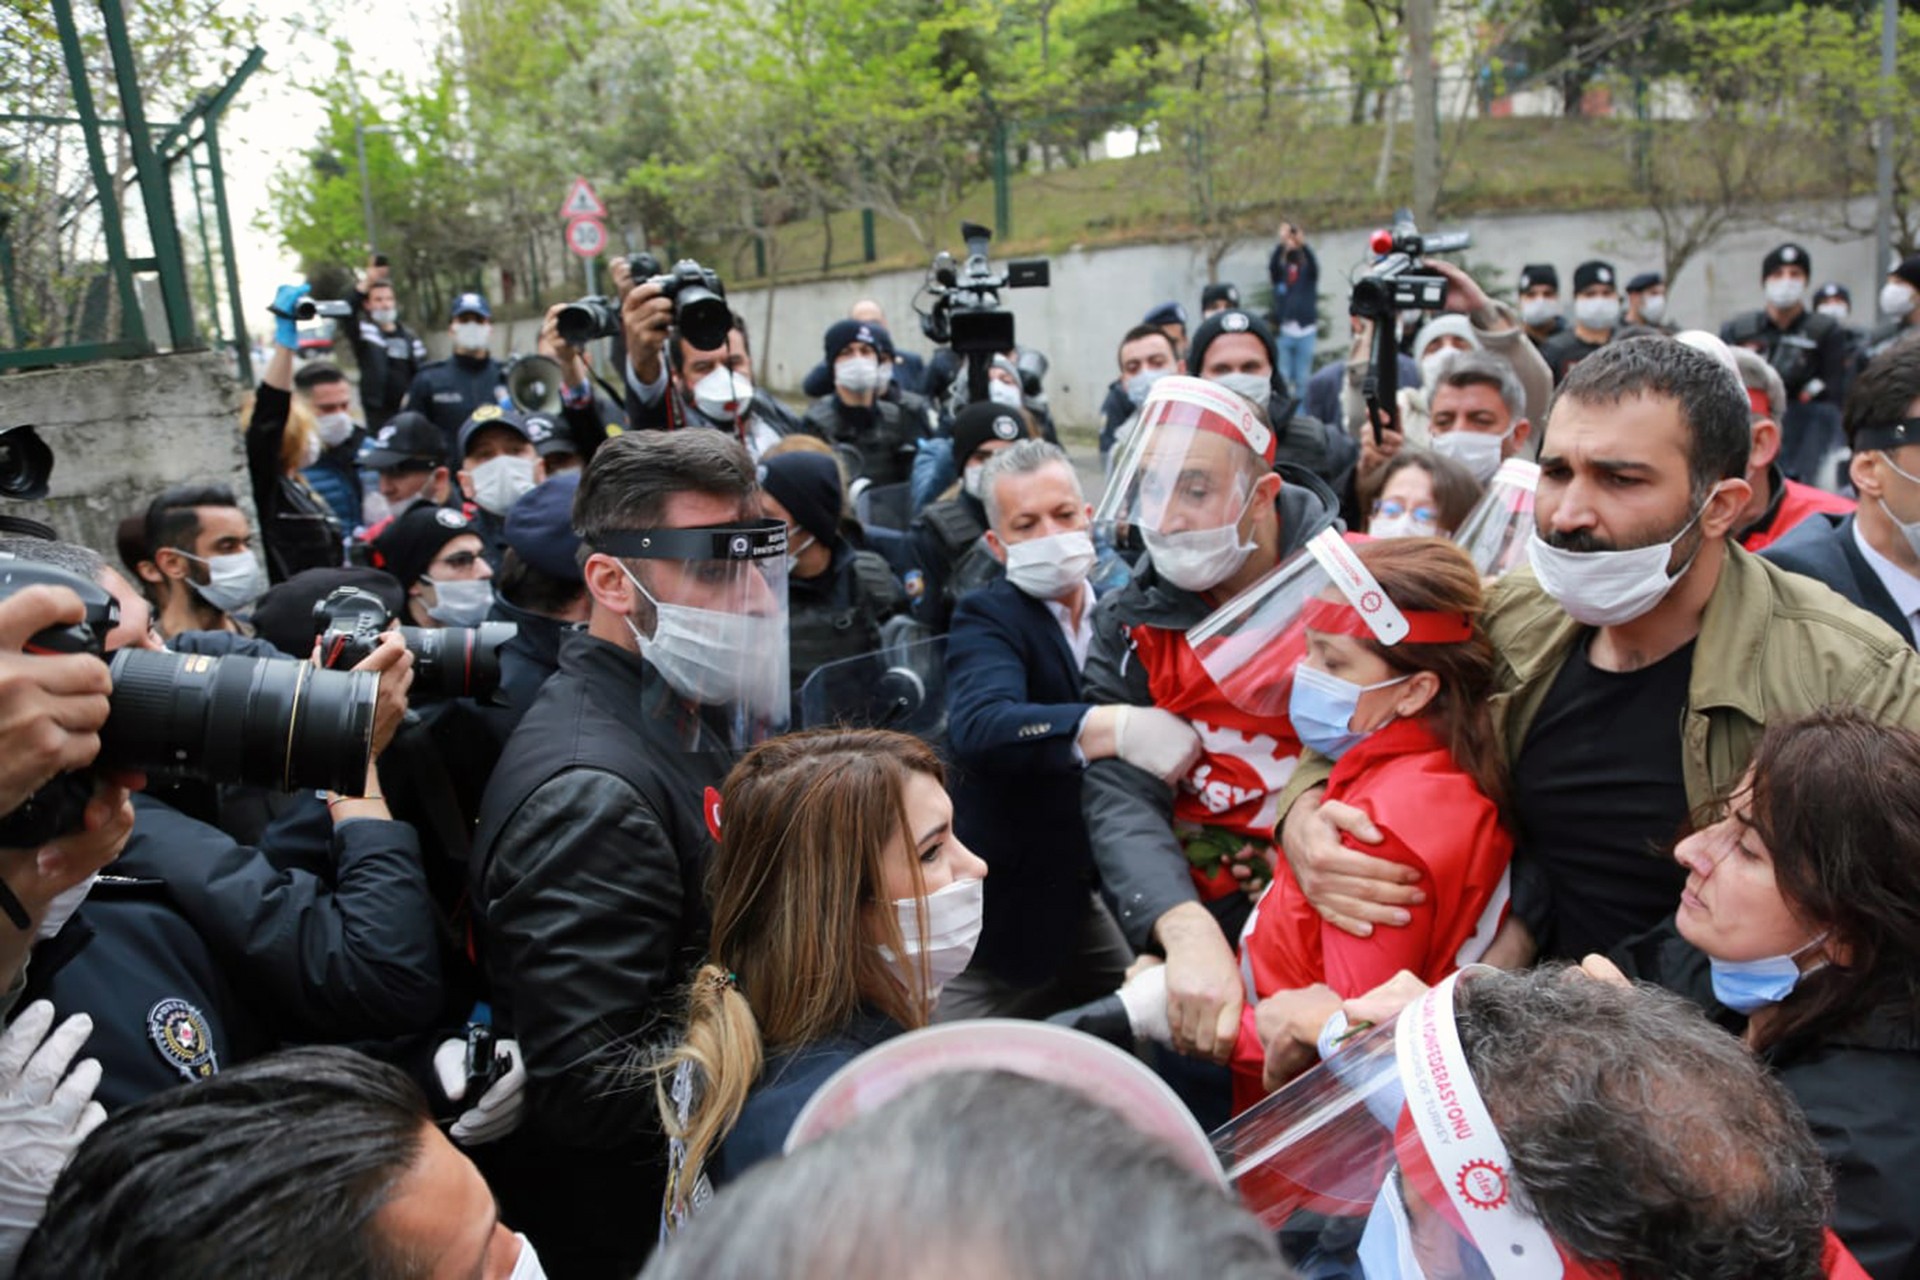 1 Mayıs Platformu na polis müdahalesi: 30 dan fazla gözaltı